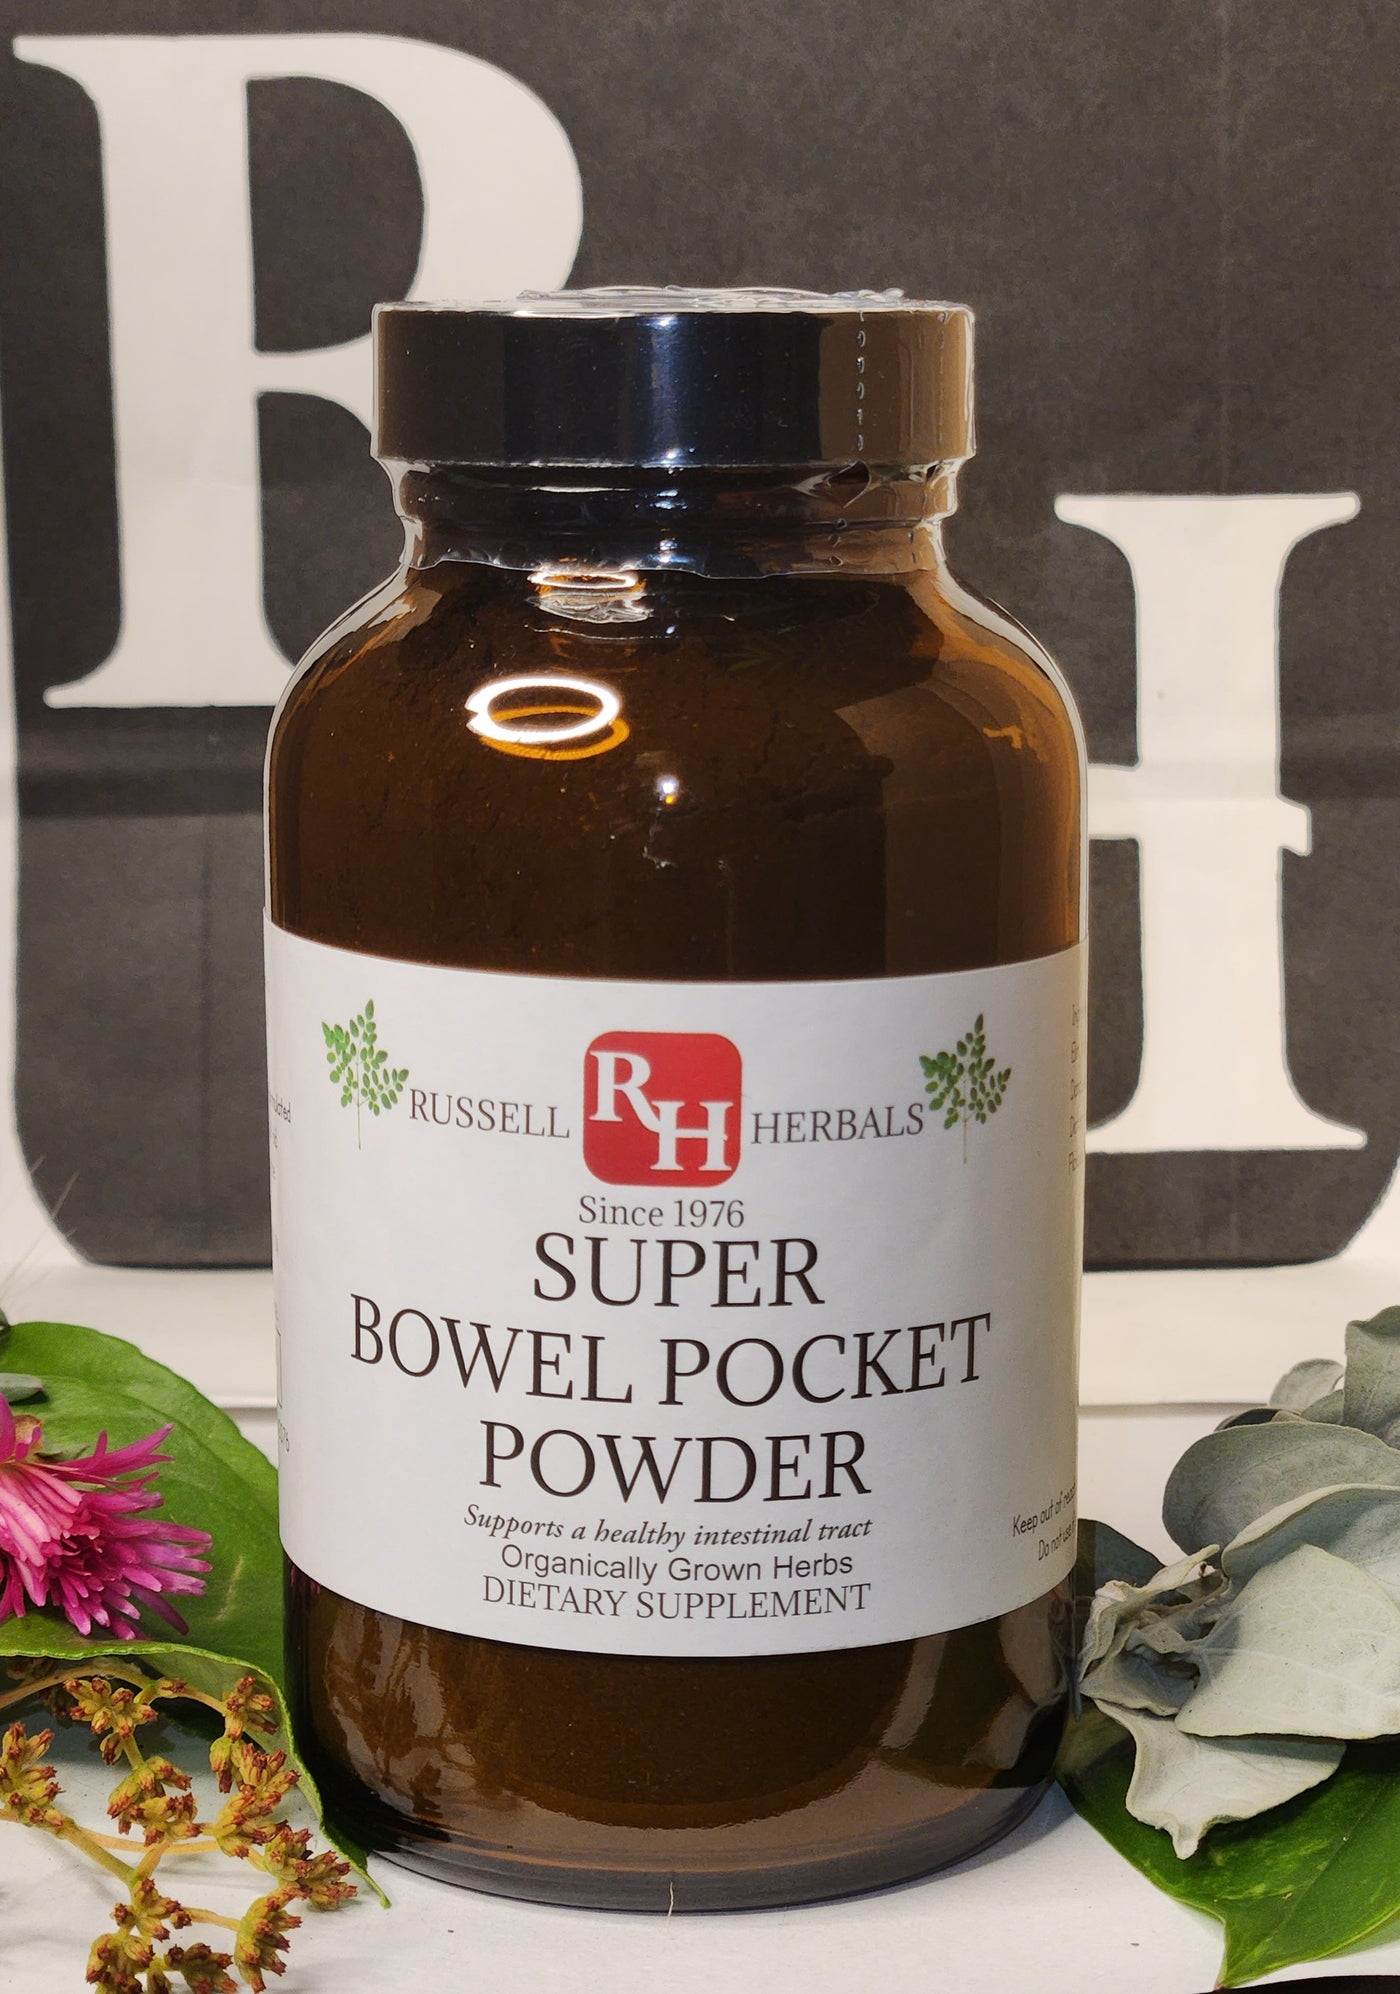 Super Bowel Pocket Powder